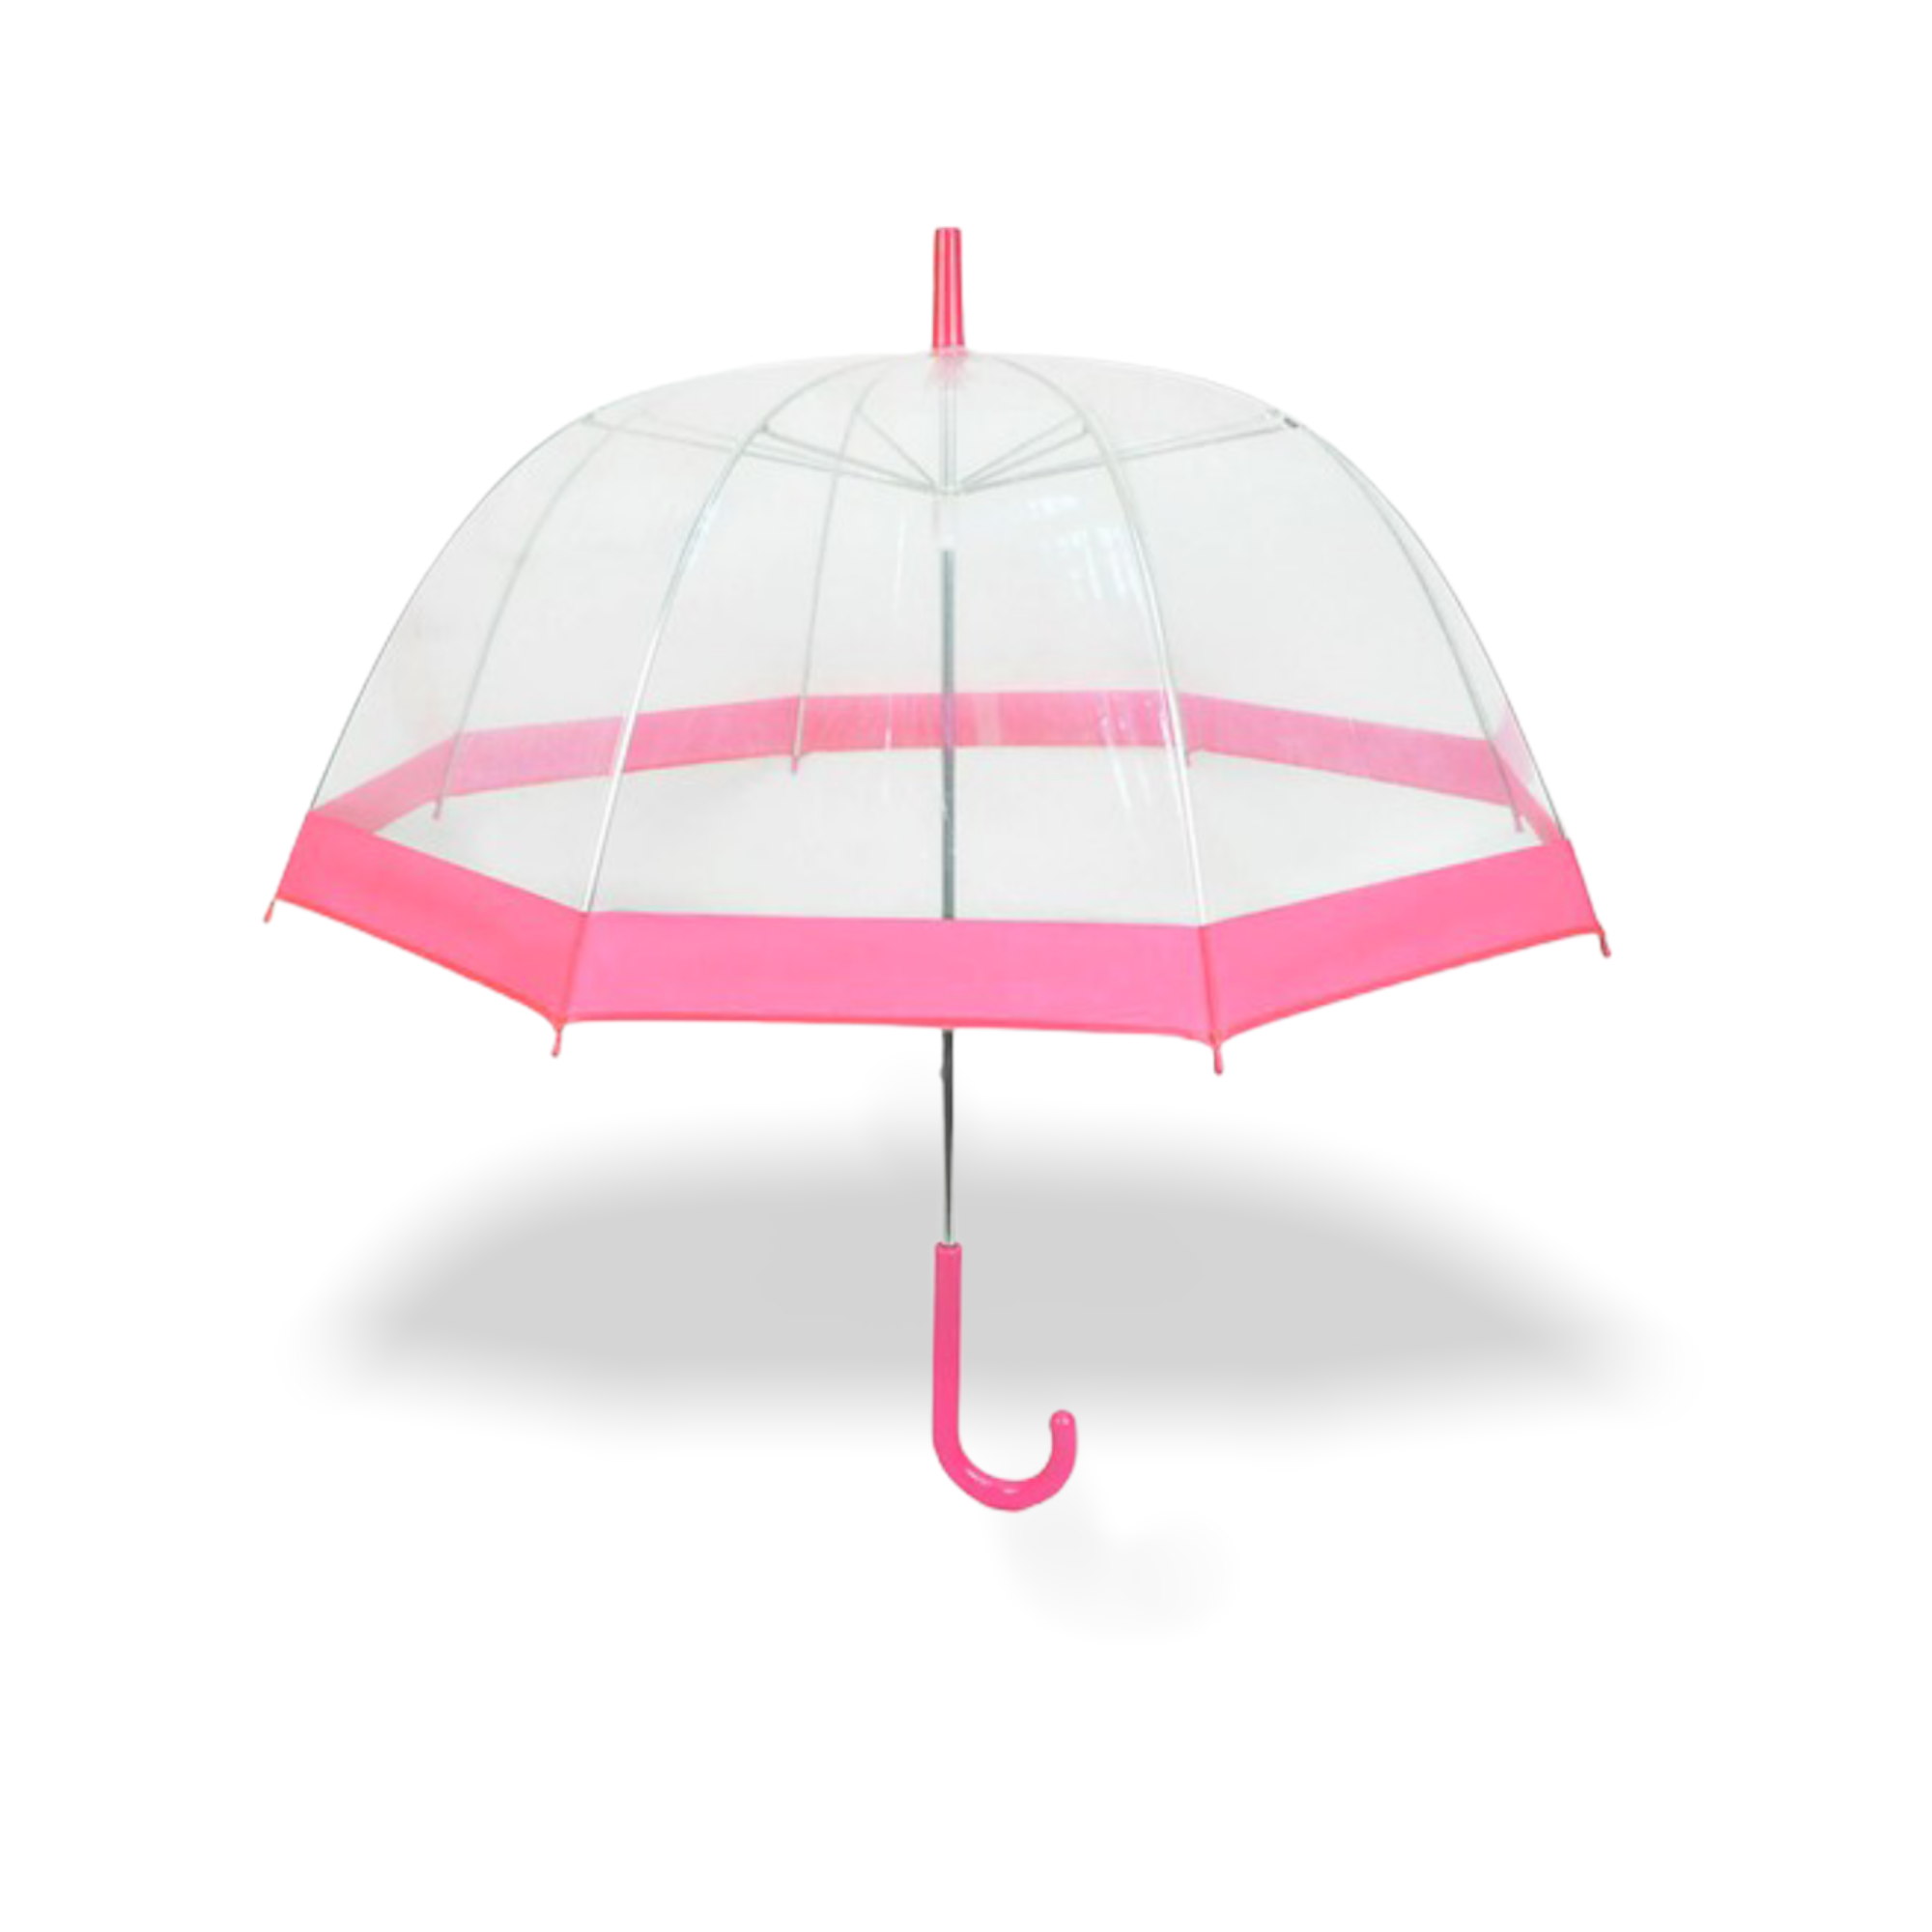 Retro Dome Umbrella